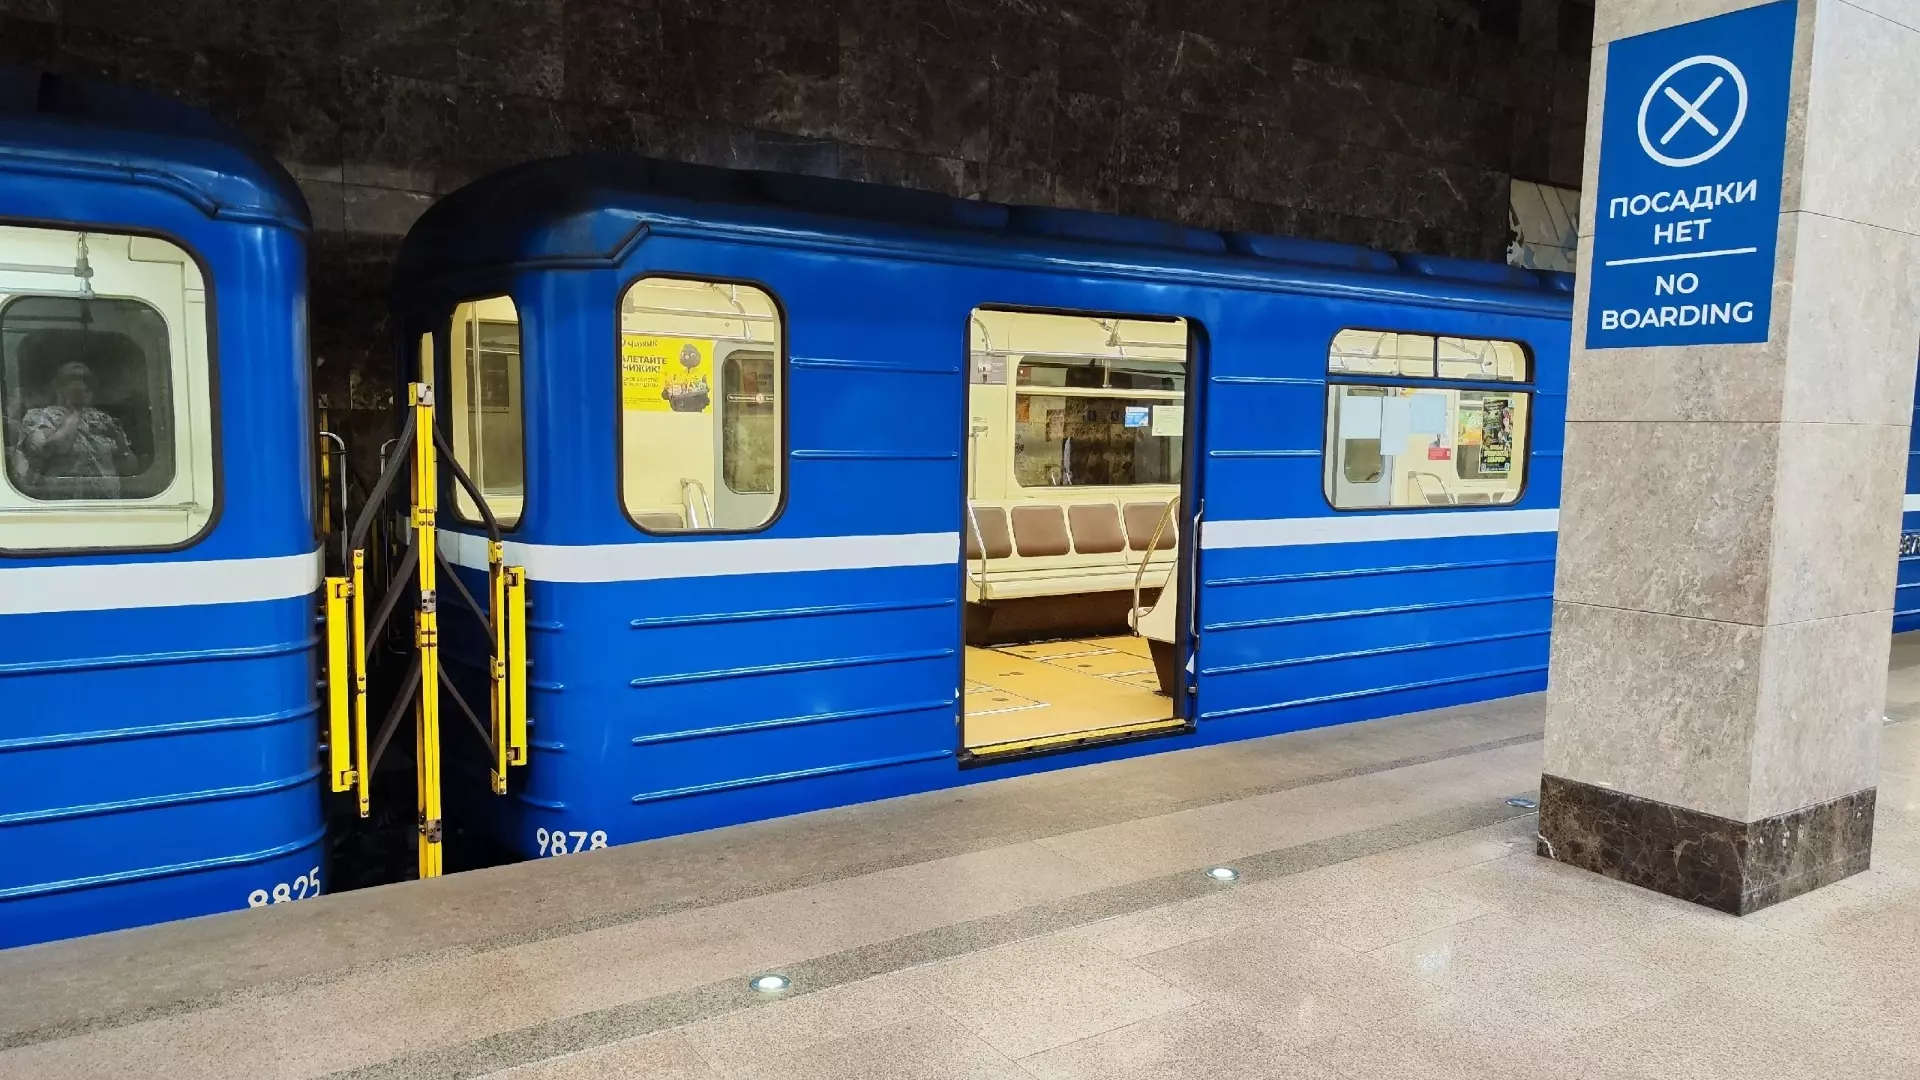 Рабочего обнаружили в тоннеле метро в Нижнем Новгороде